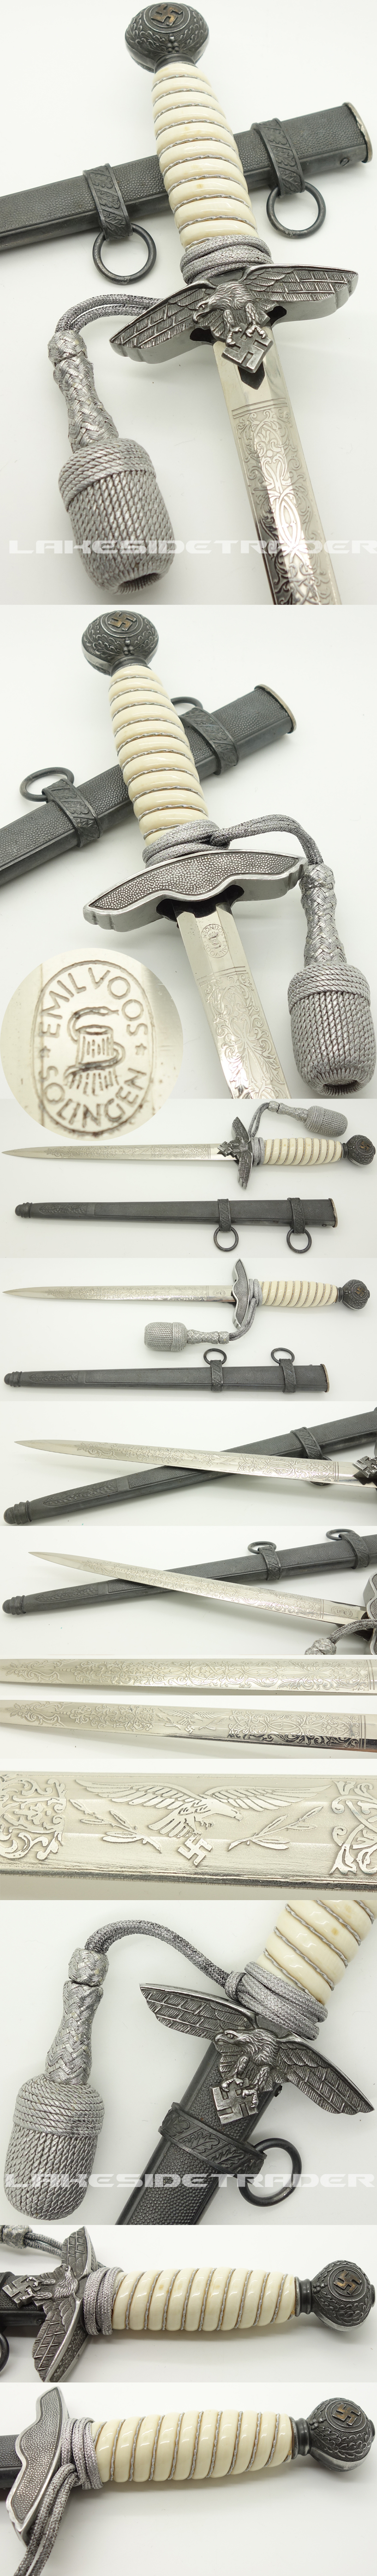 Voos Etched Blade & Bone Grip - 2nd Model Luftwaffe Dagger